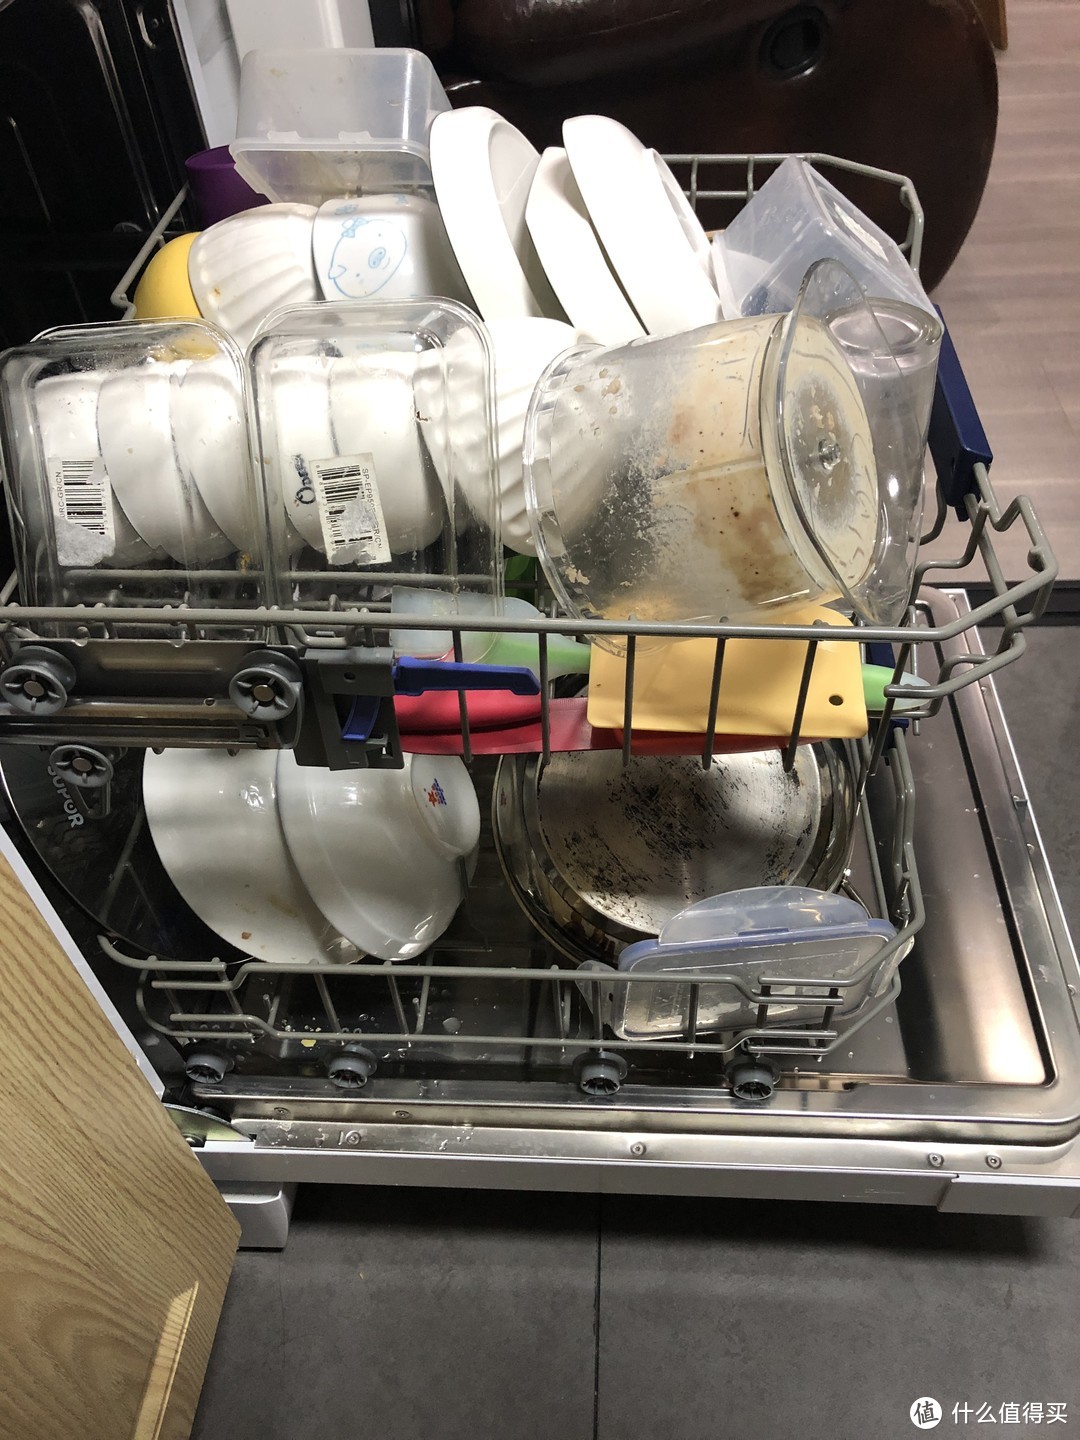 13套洗碗机放的满满当当的了